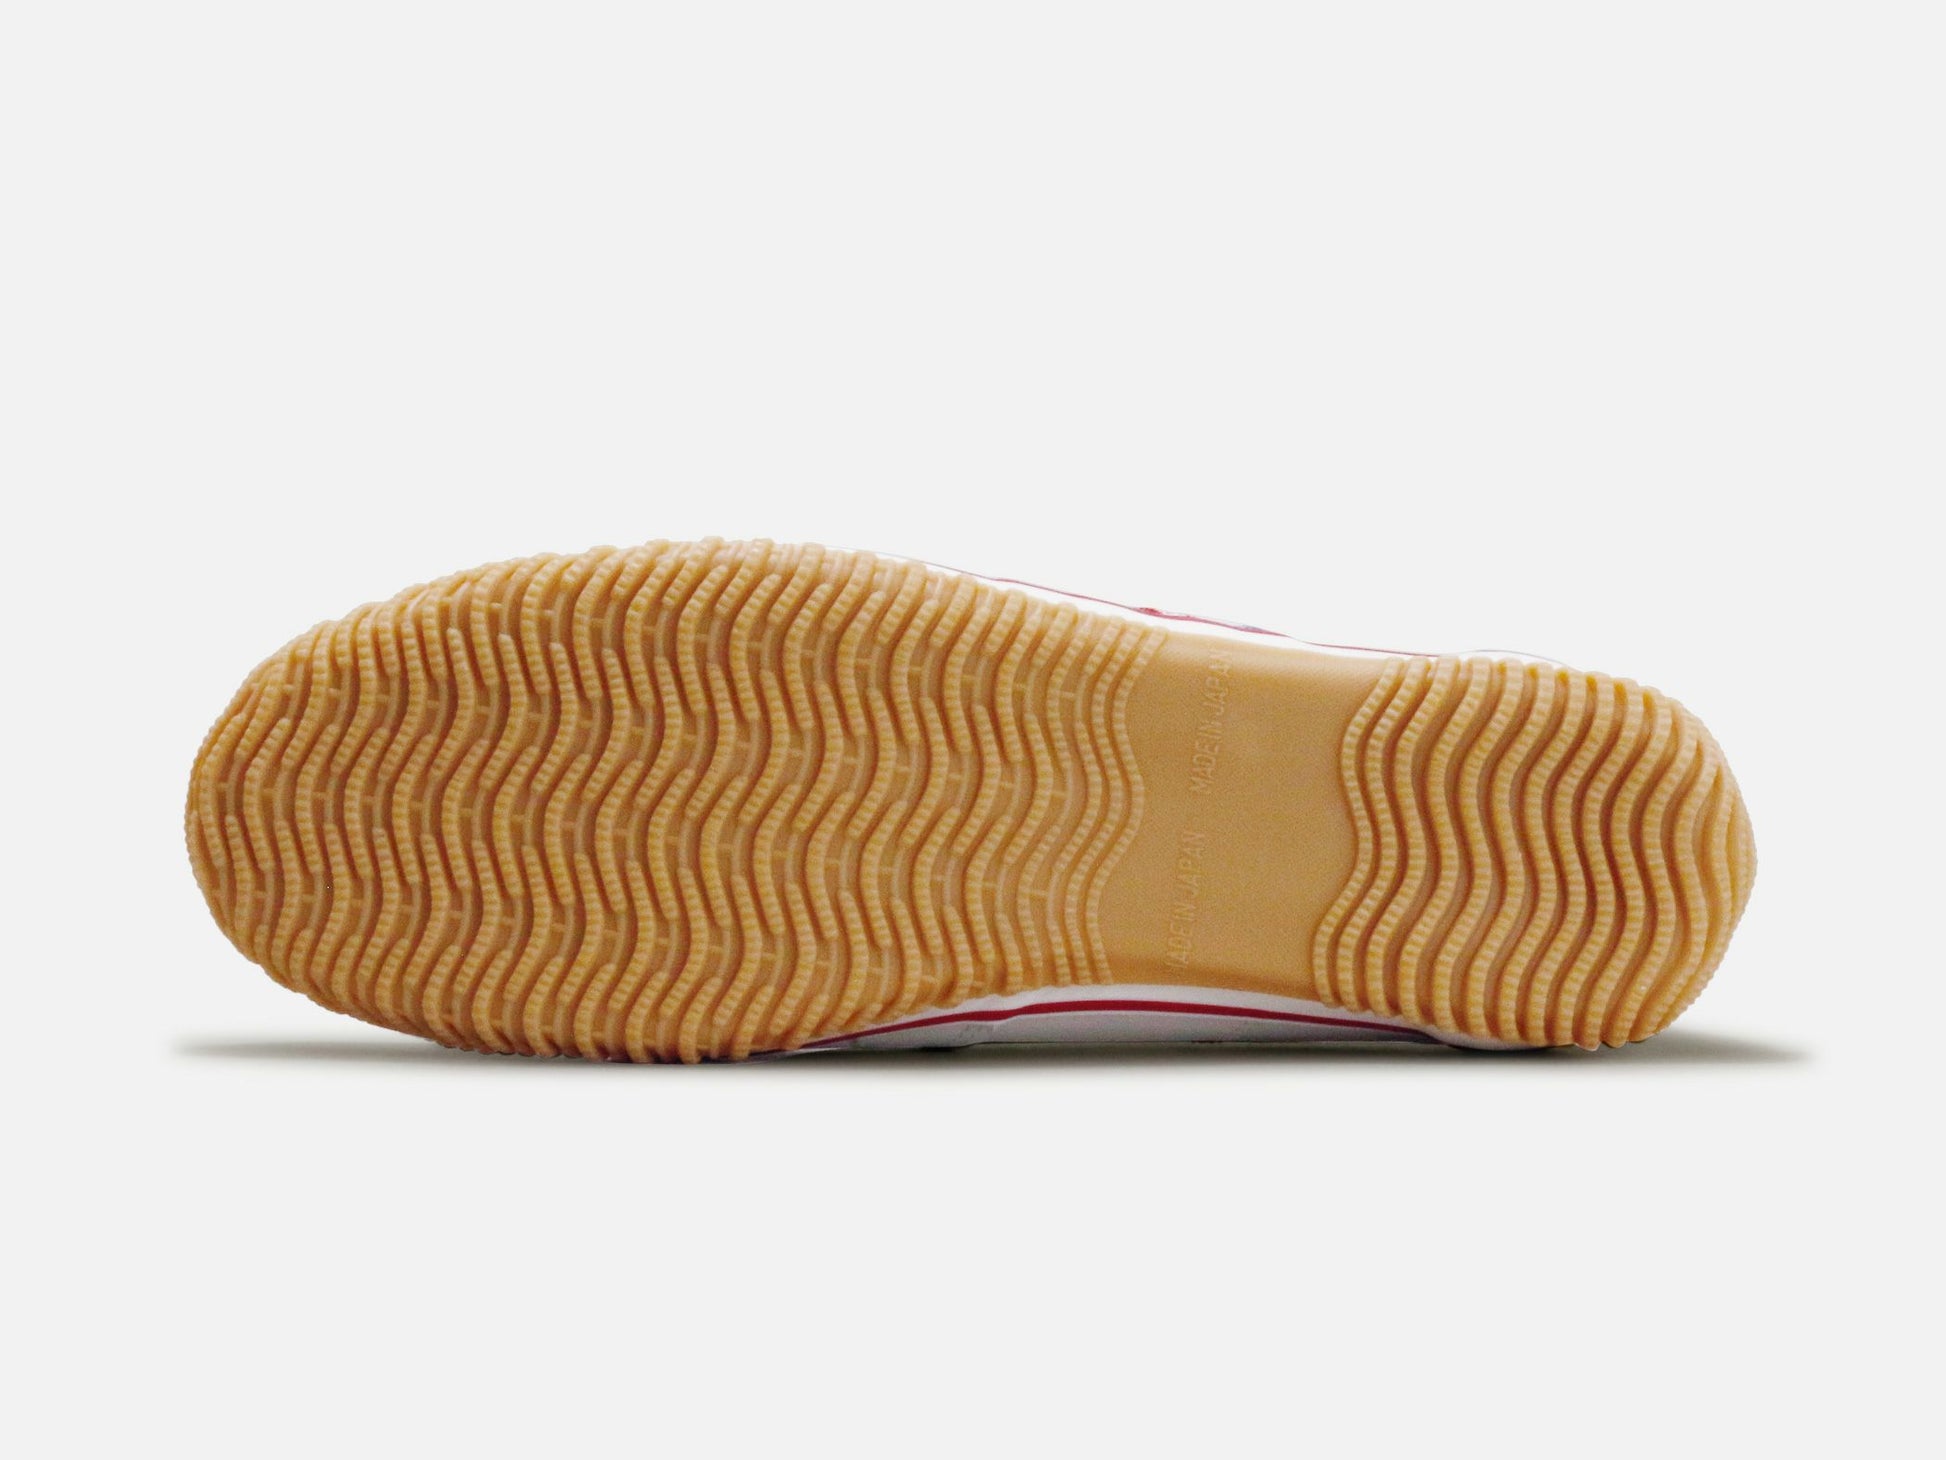 SPINGLE MOVEのスニーカー「SPM-198 Tricolor」の靴底の商品画像